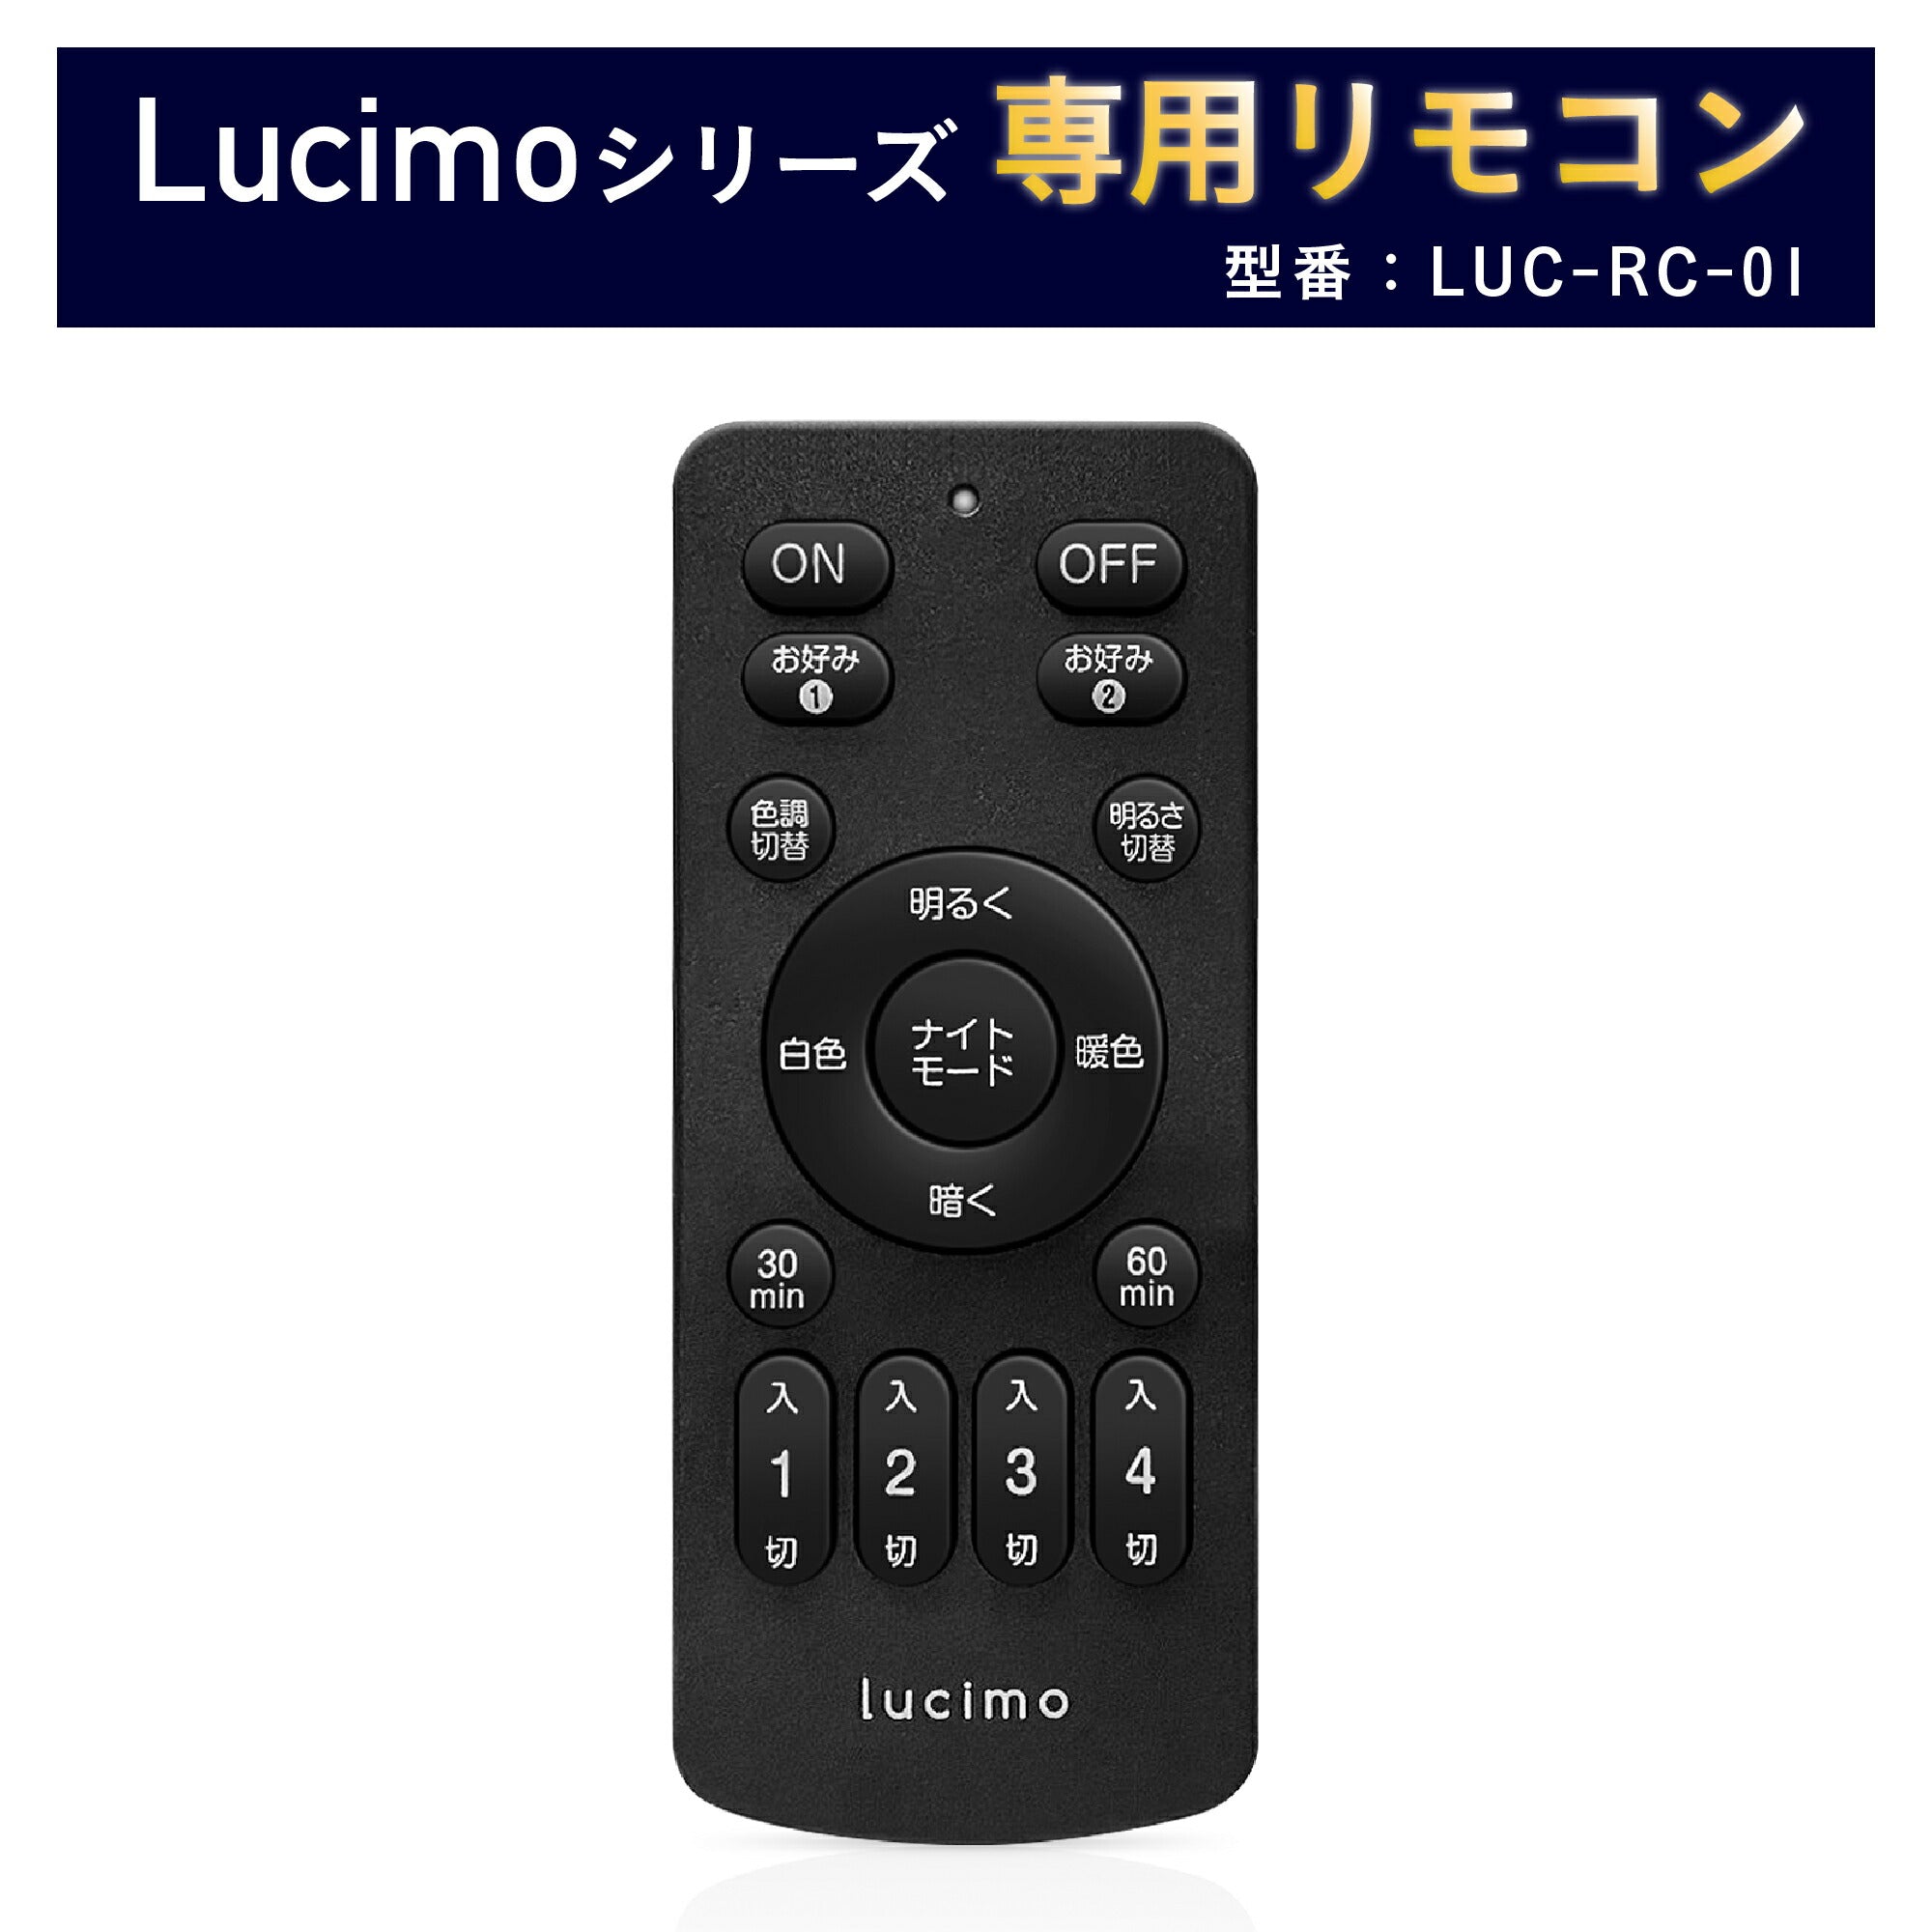 リモコン Lucimo ルシモ 照明 用 型番 LUC-RC-01 リモコン単品 – FINE